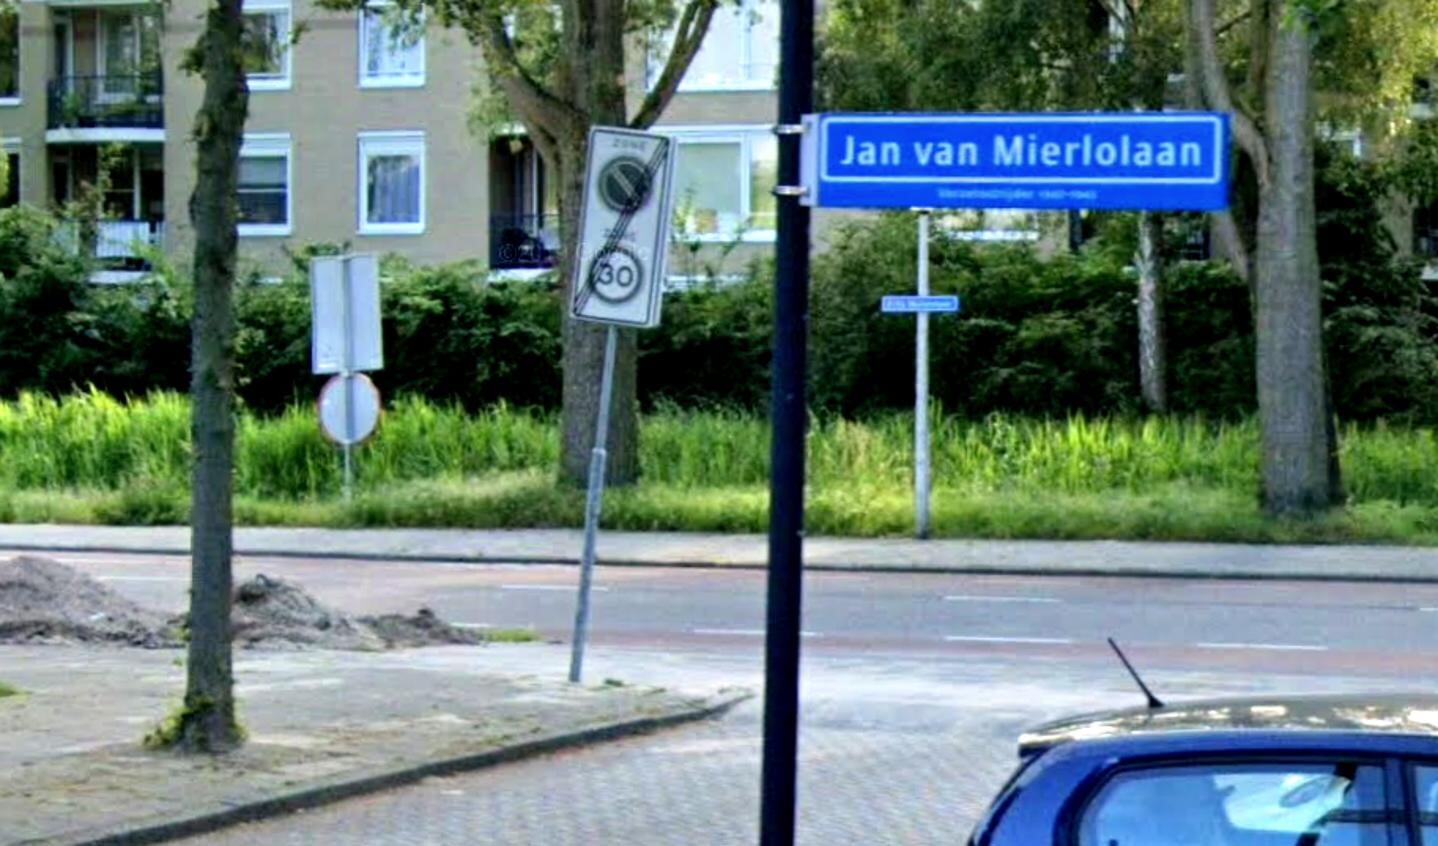 De Jan van Mierlolaan in Amstelveen-Oost is genoemd naar een verzetsstrijder uit de Tweede Wereldoorlog. 